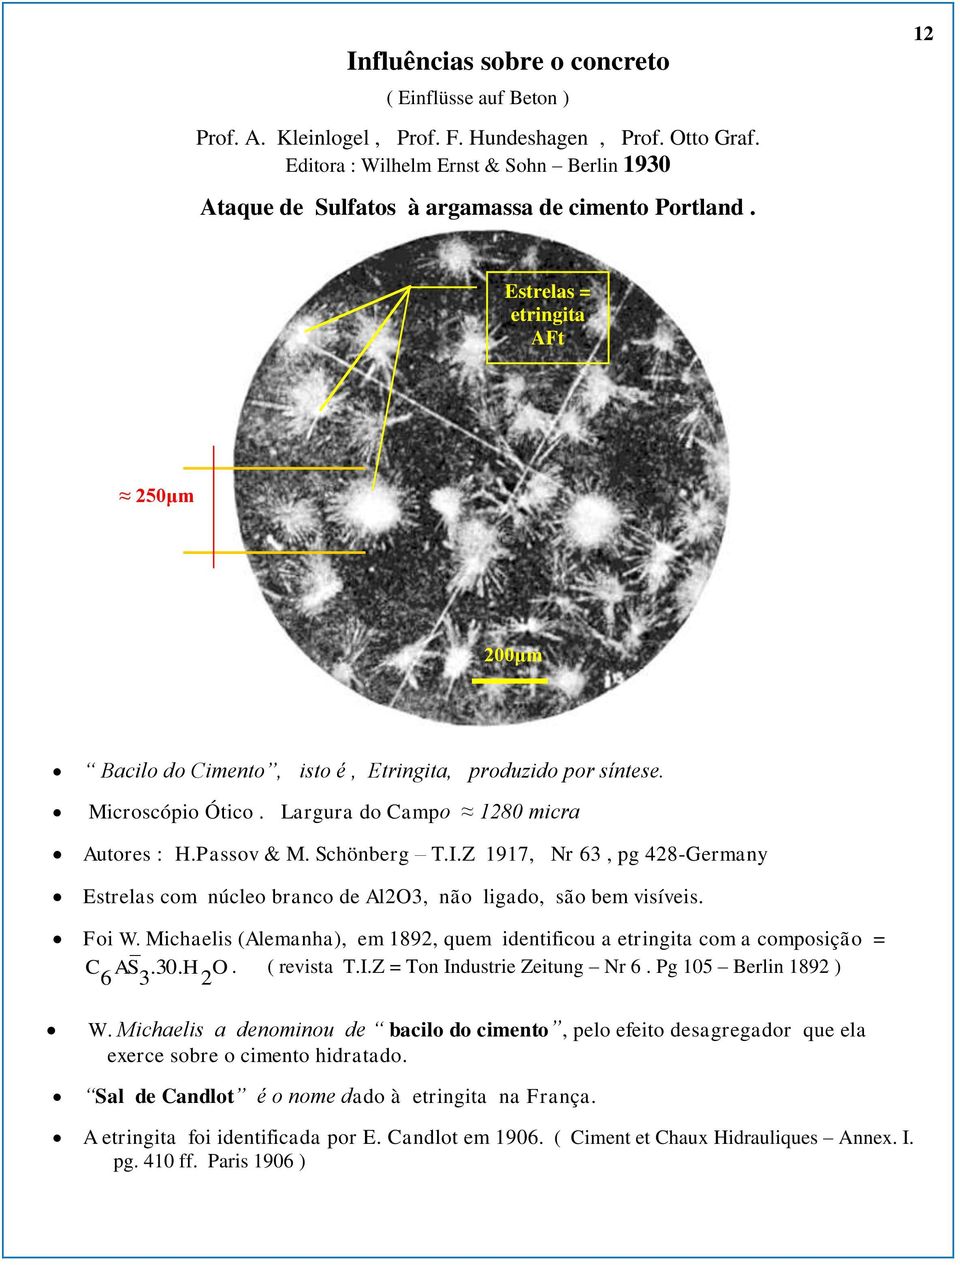 Microscópio Ótico. Largura do Campo 1280 micra Autores : H.Passov & M. Schönberg T.I.Z 1917, Nr 63, pg 428-Germany Estrelas com núcleo branco de Al2O3, não ligado, são bem visíveis. Foi W.